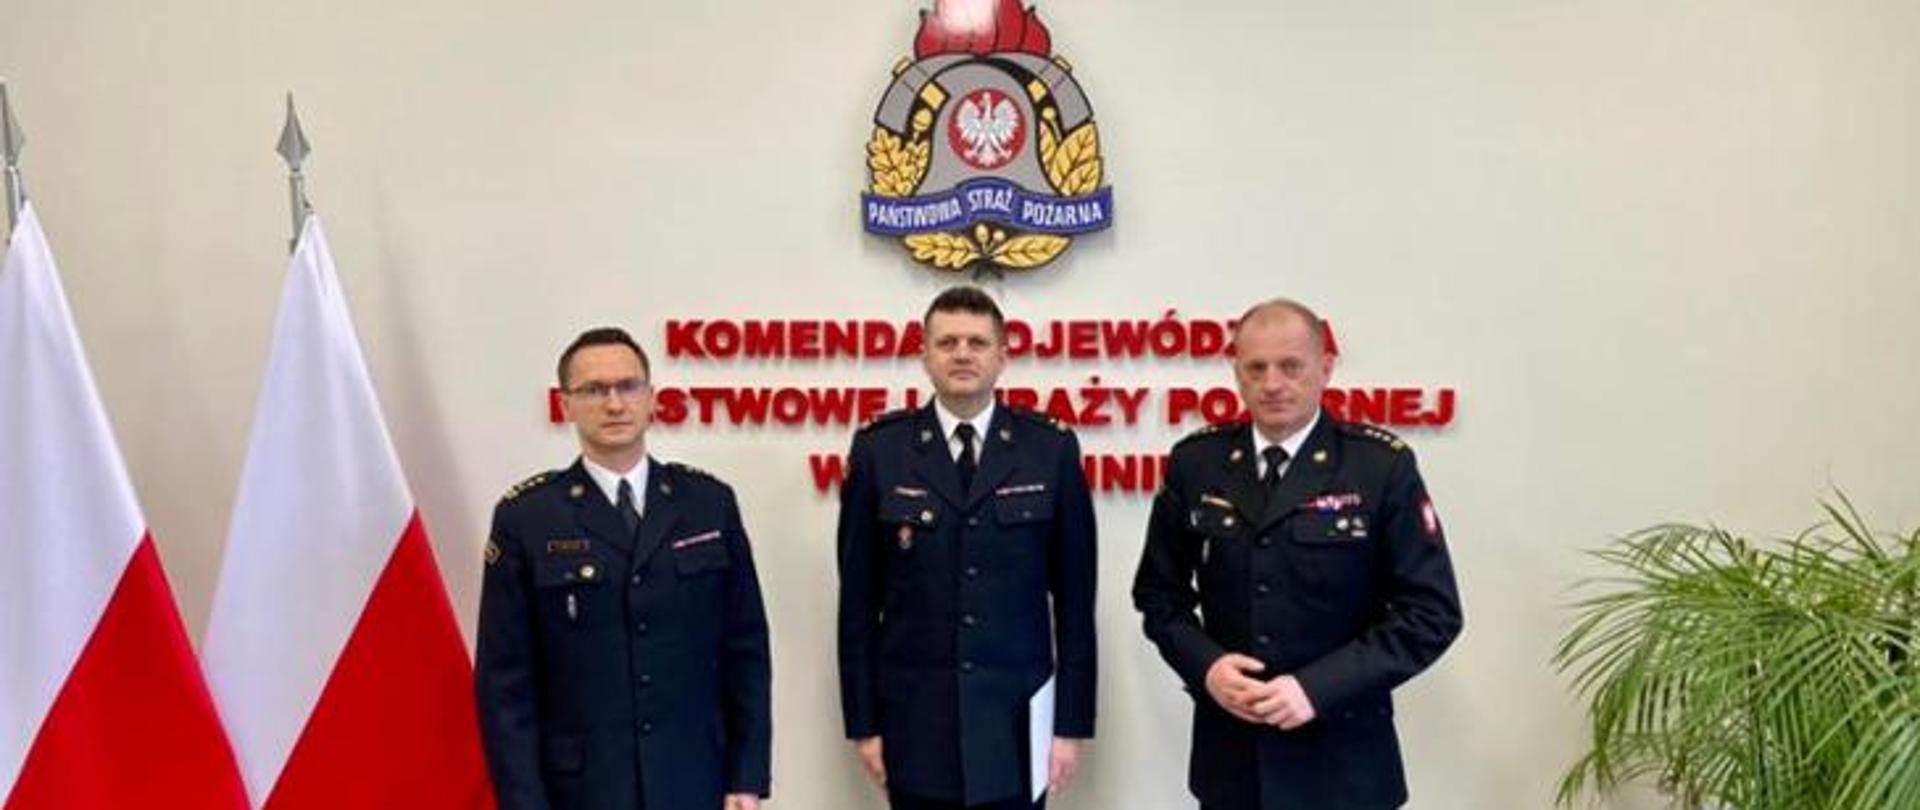 Powierzenie pełnienia obowiązków zastępcy Komendanta Miejskiego Państwowej Straży Pożarnej w Szczecinie